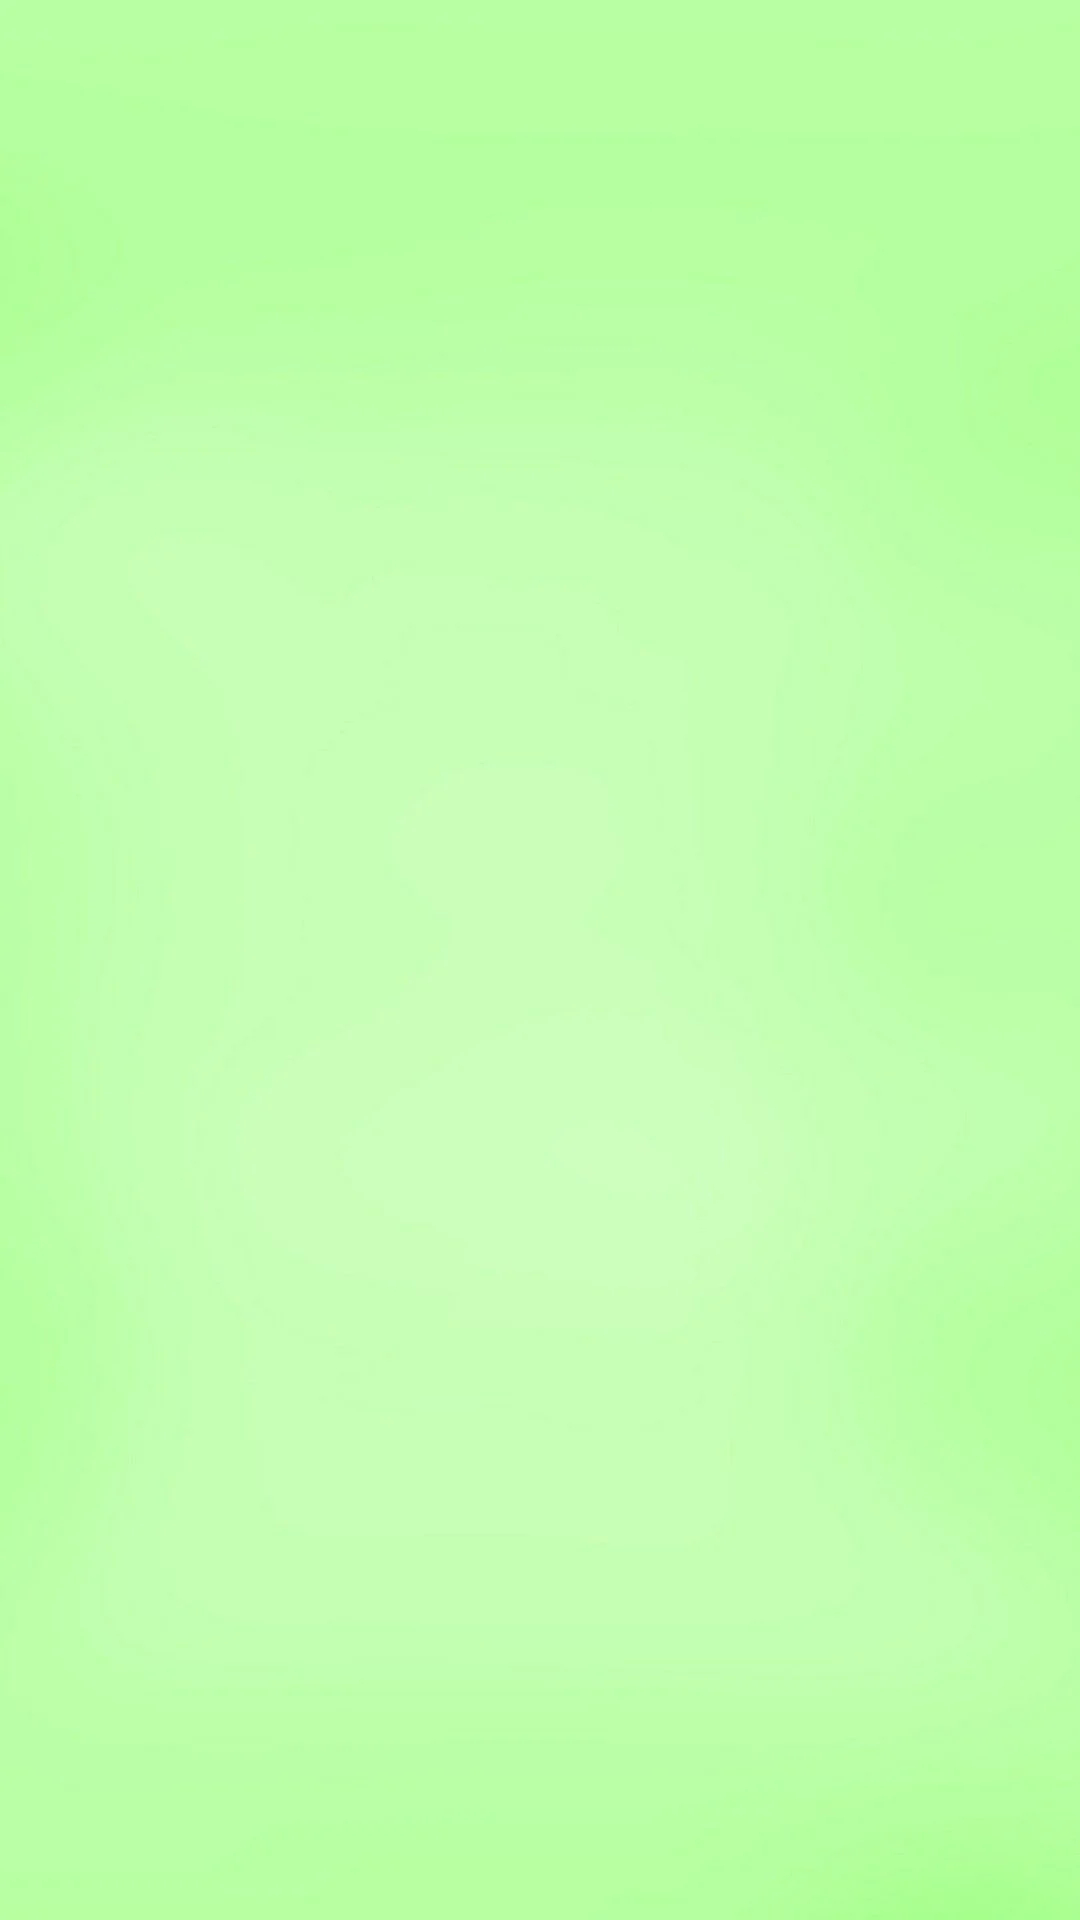 1080x1920 Super Light Green Wallpapers Top Free Super Light Green Backgrounds